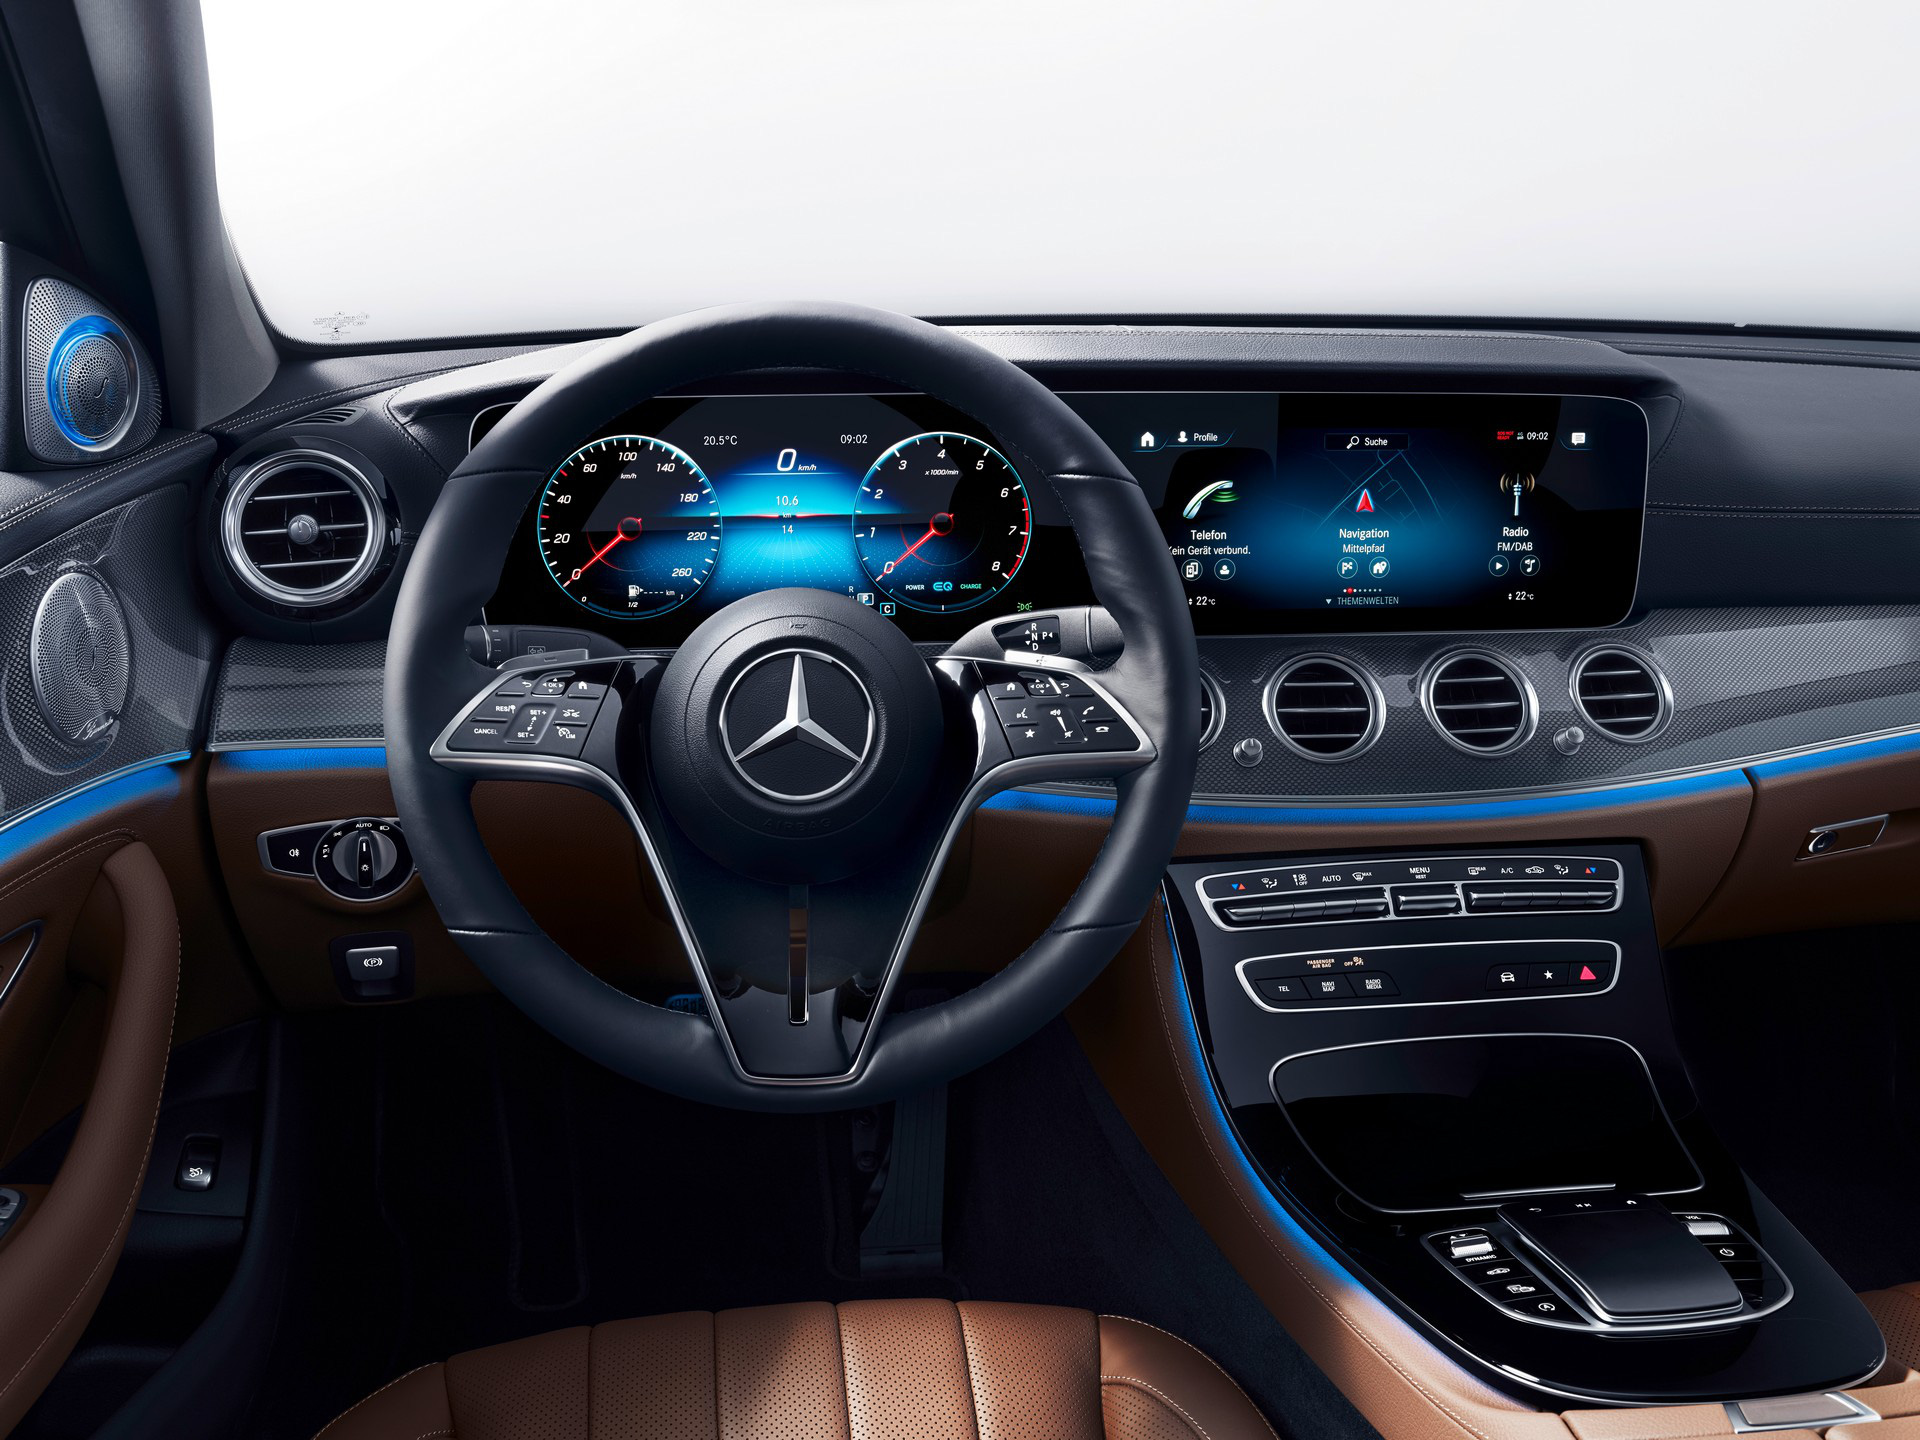 Mercedes-Benz E-Class thế hệ mới lộ vô-lăng cảm ứng siêu nhạy, có tính năng vuốt như iPhone - Ảnh 1.